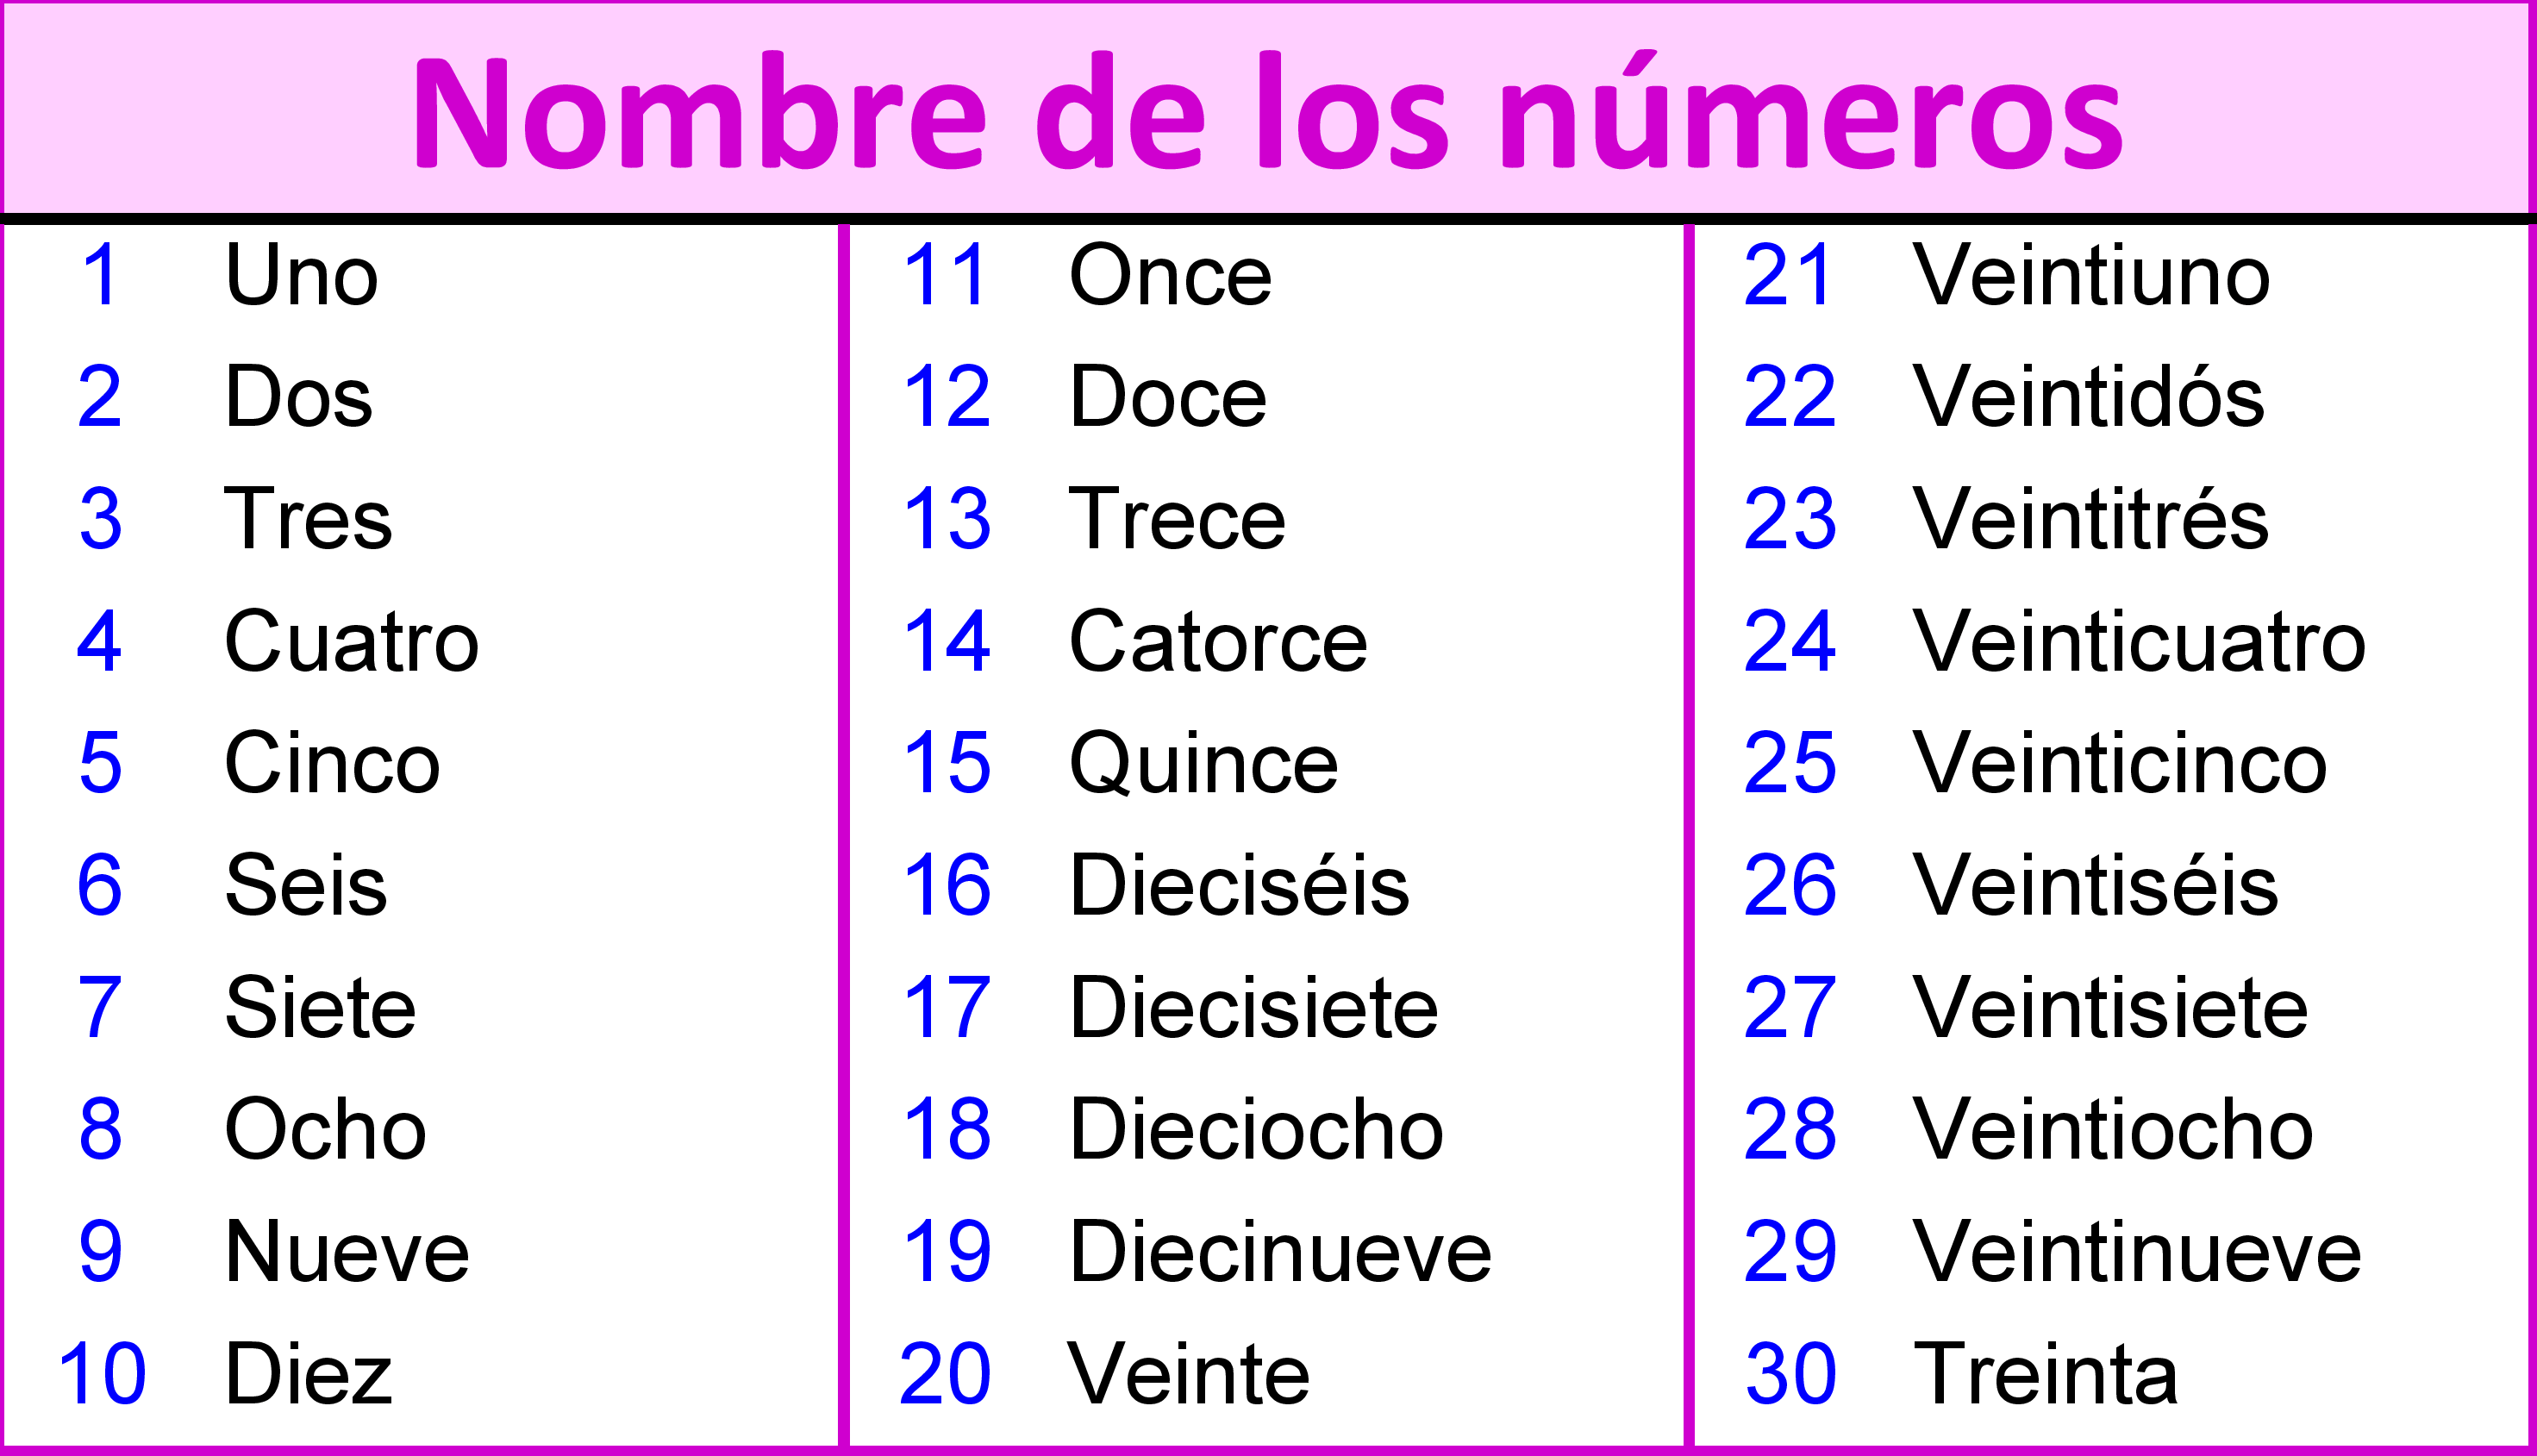 La imagen muestra los números del uno al 30 junto con sus nombres